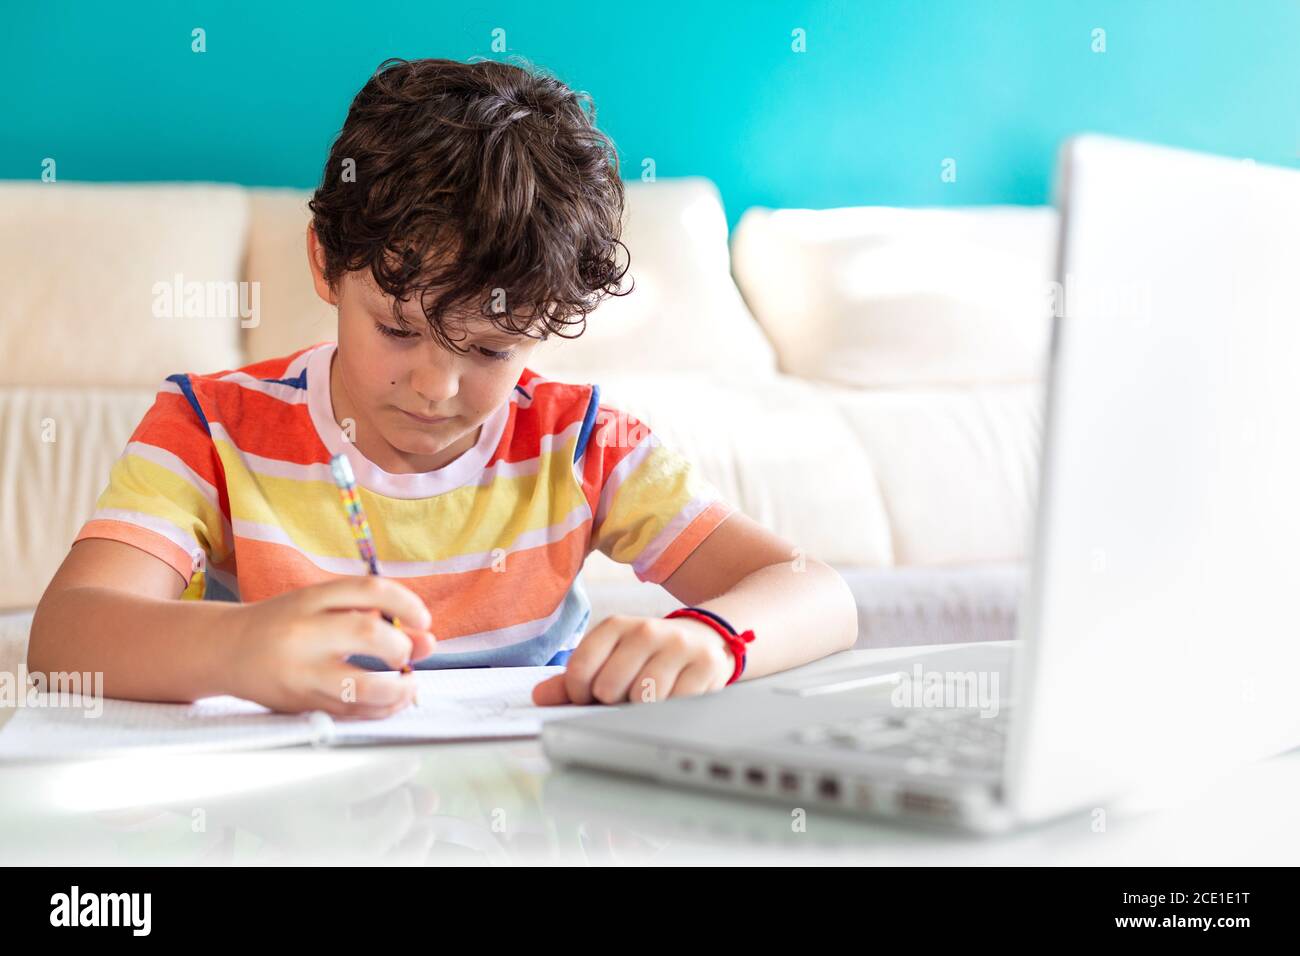 Un petit garçon fait ses devoirs devant un ordinateur portable. Concept de l'éducation en ligne à partir de la maison. Banque D'Images